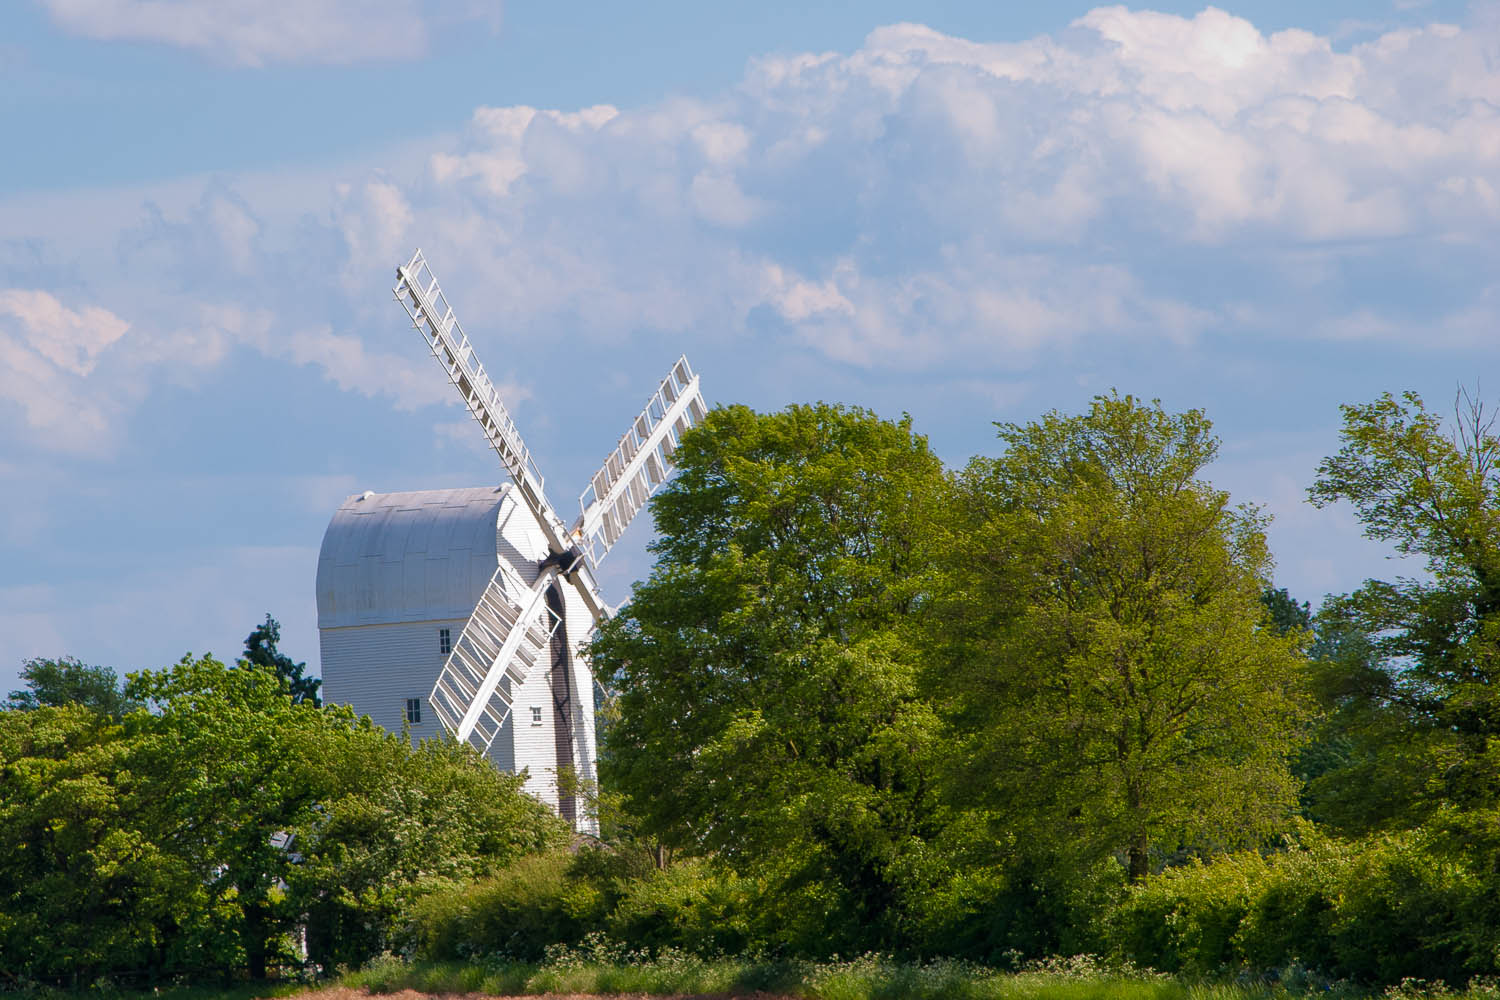 Aythorpe Roding Windmill